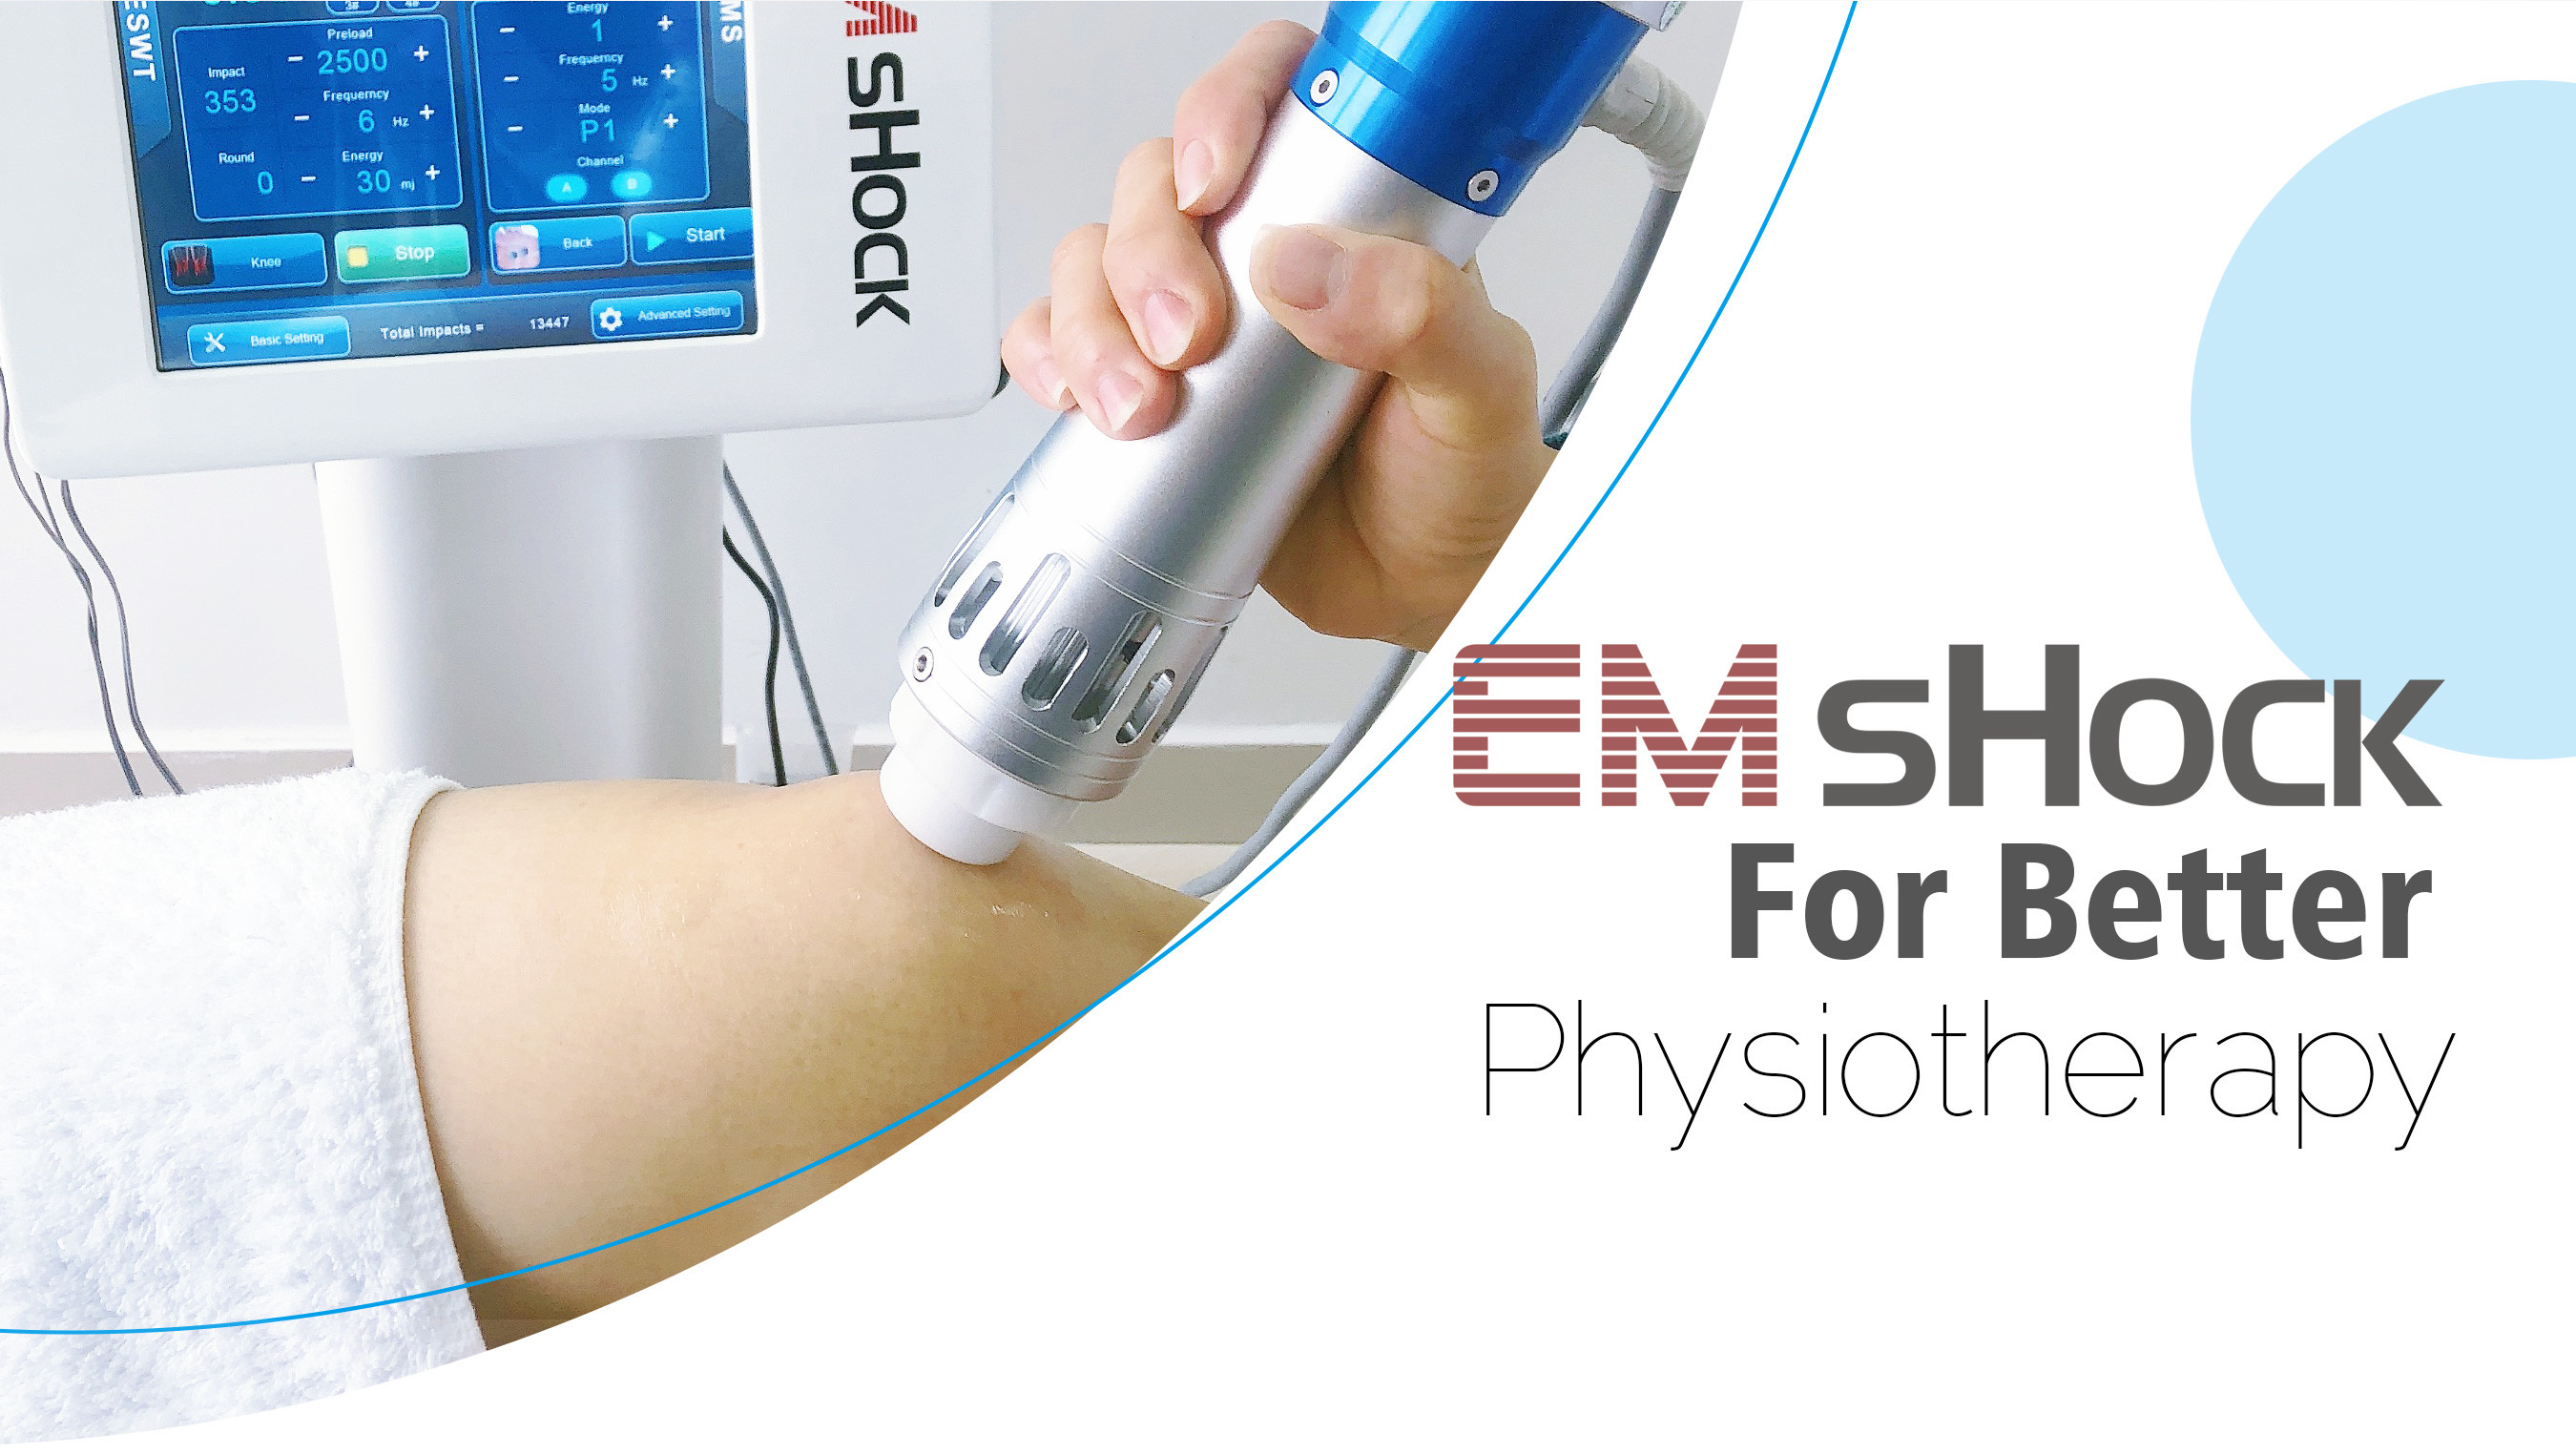 Stoßwellen-Therapie-Maschine - ED (erektile Dysfunktion) - Ästhetik - schmerzen Sie Releif - elektrische Muskel-Anregung - Behandlung